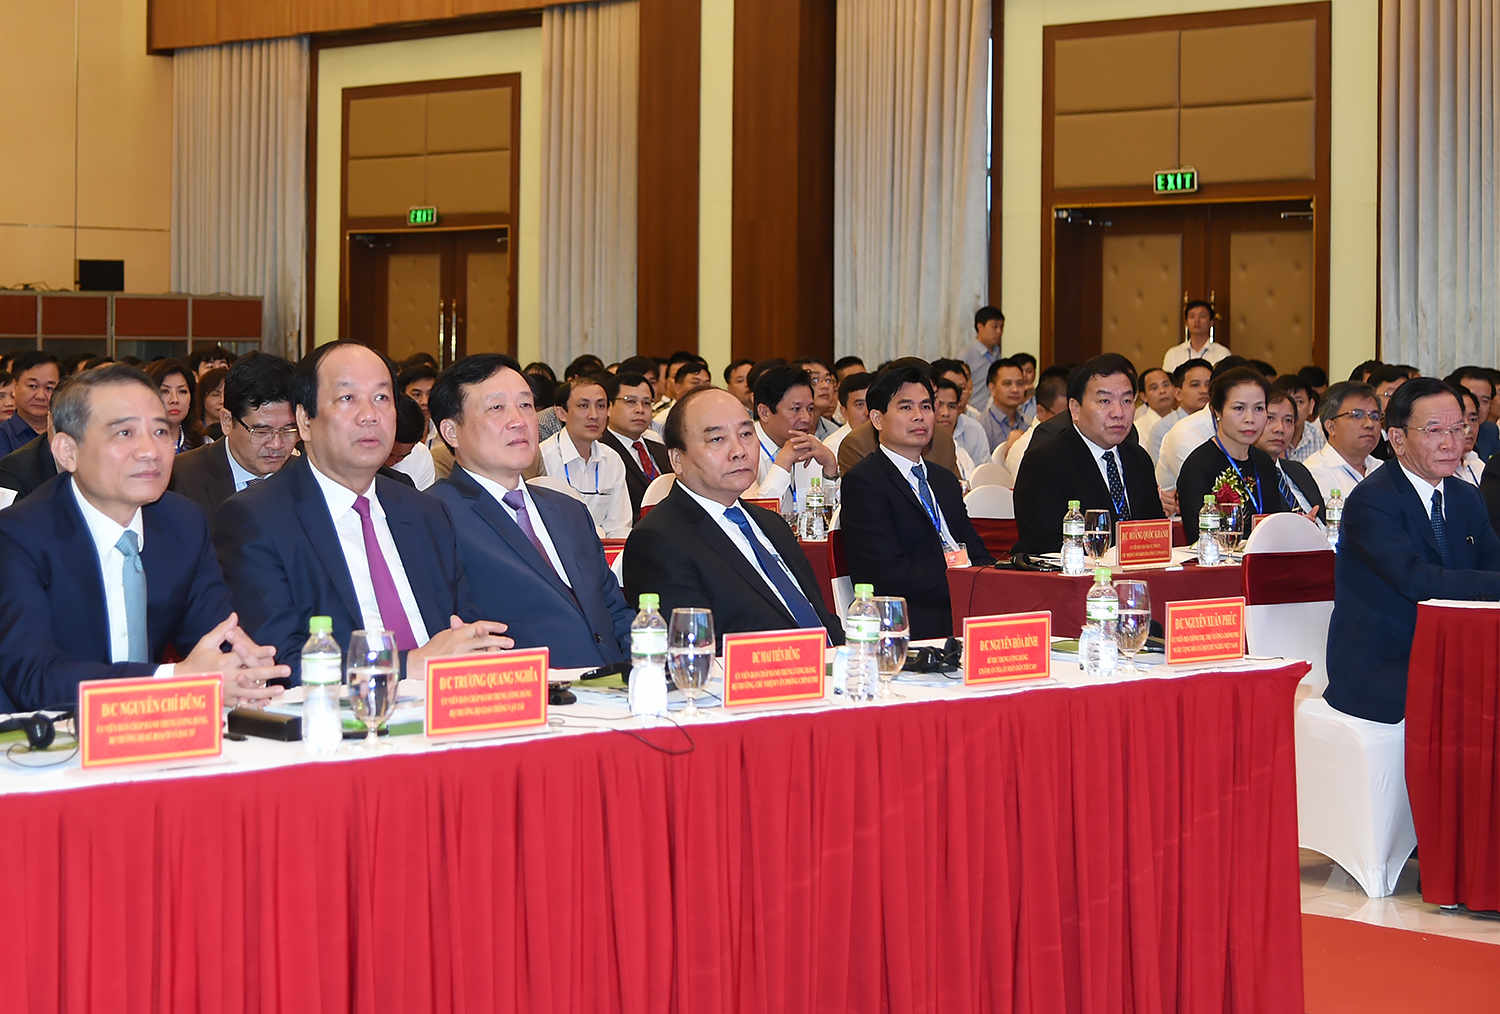 Thủ tướng Nguyễn Xuân Phúc và đại diện một số lãnh đạo bộ, ban, ngành dự Hội nghị Xúc tiến đầu tư tỉnh Sơn La năm 2017. Ảnh: VGP/Quang Hiếu.